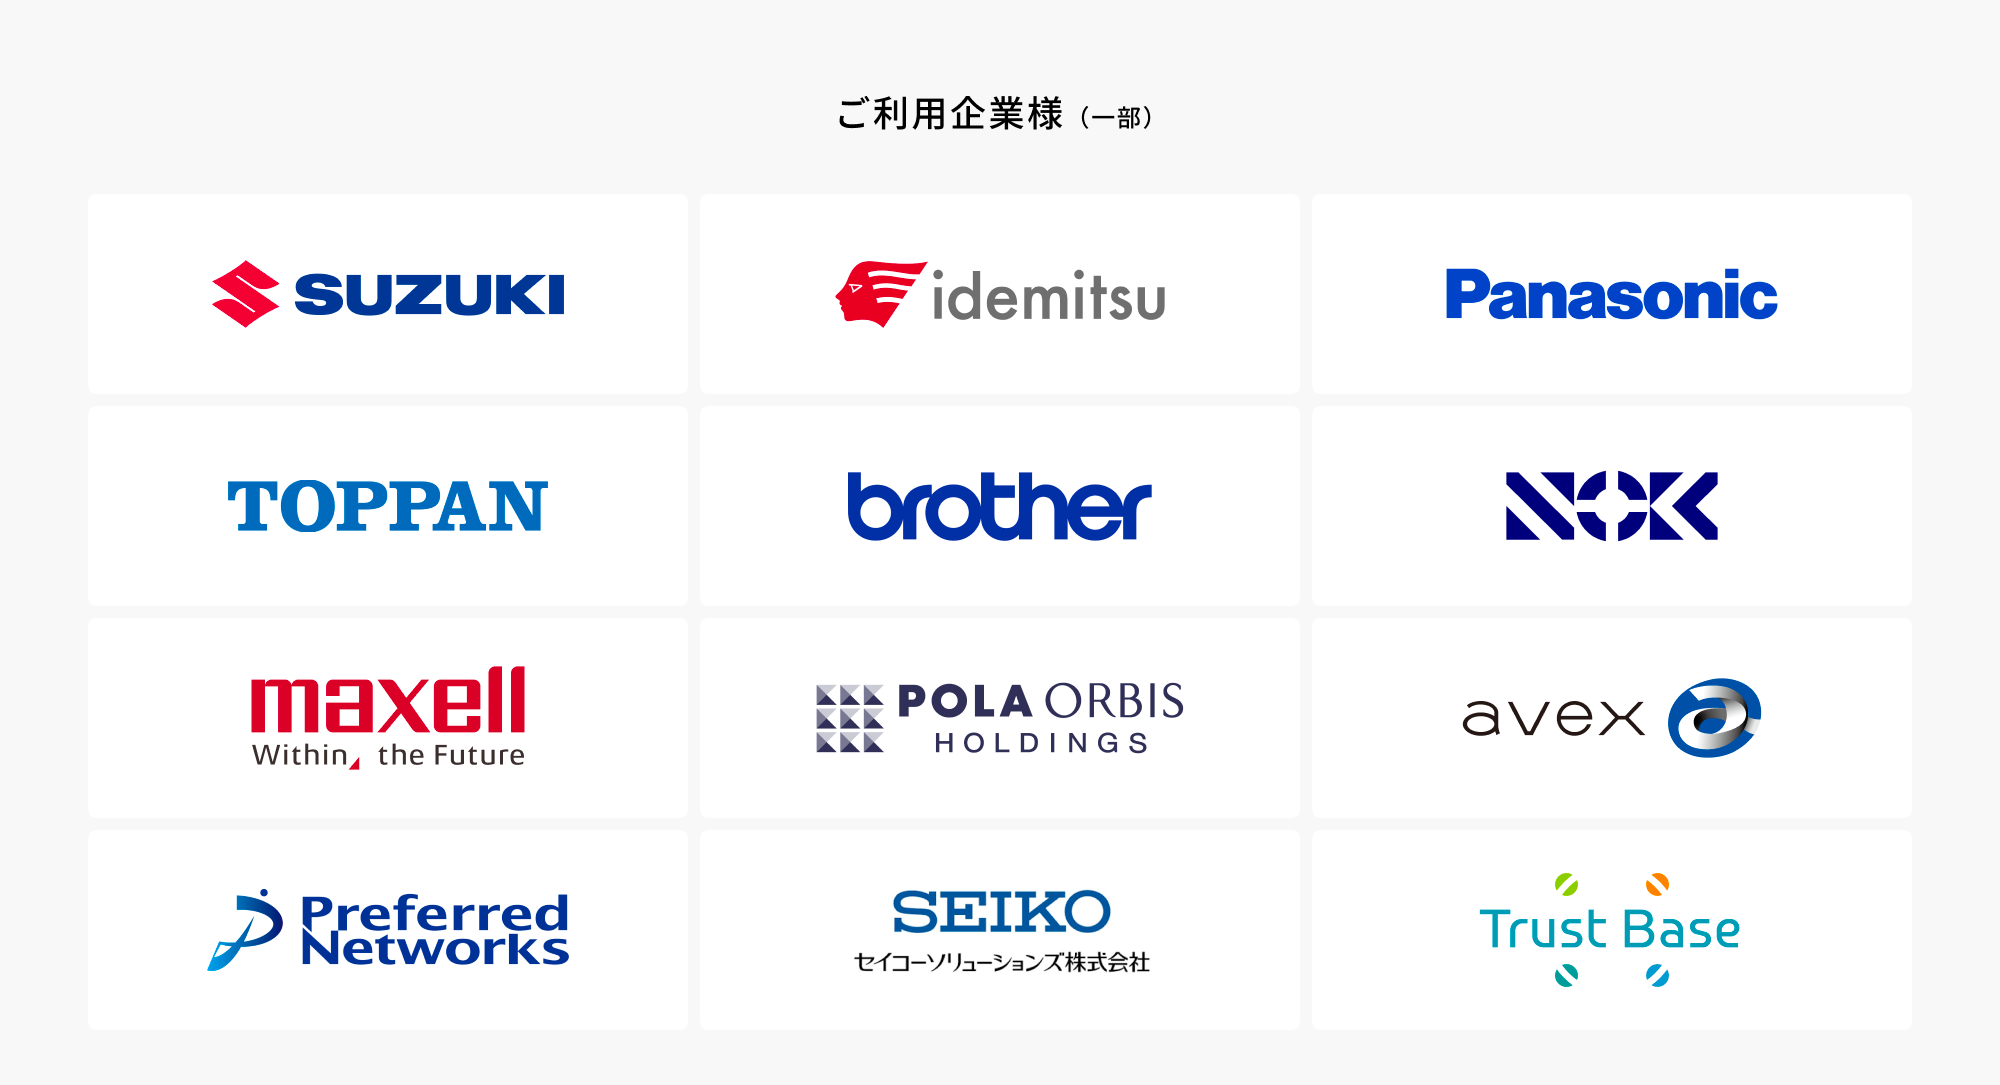 【導入事例】日本発のクラウドセキュリティ企業「Cloudbase」、TOPPANホールディングス株式会社の導入事例を公開